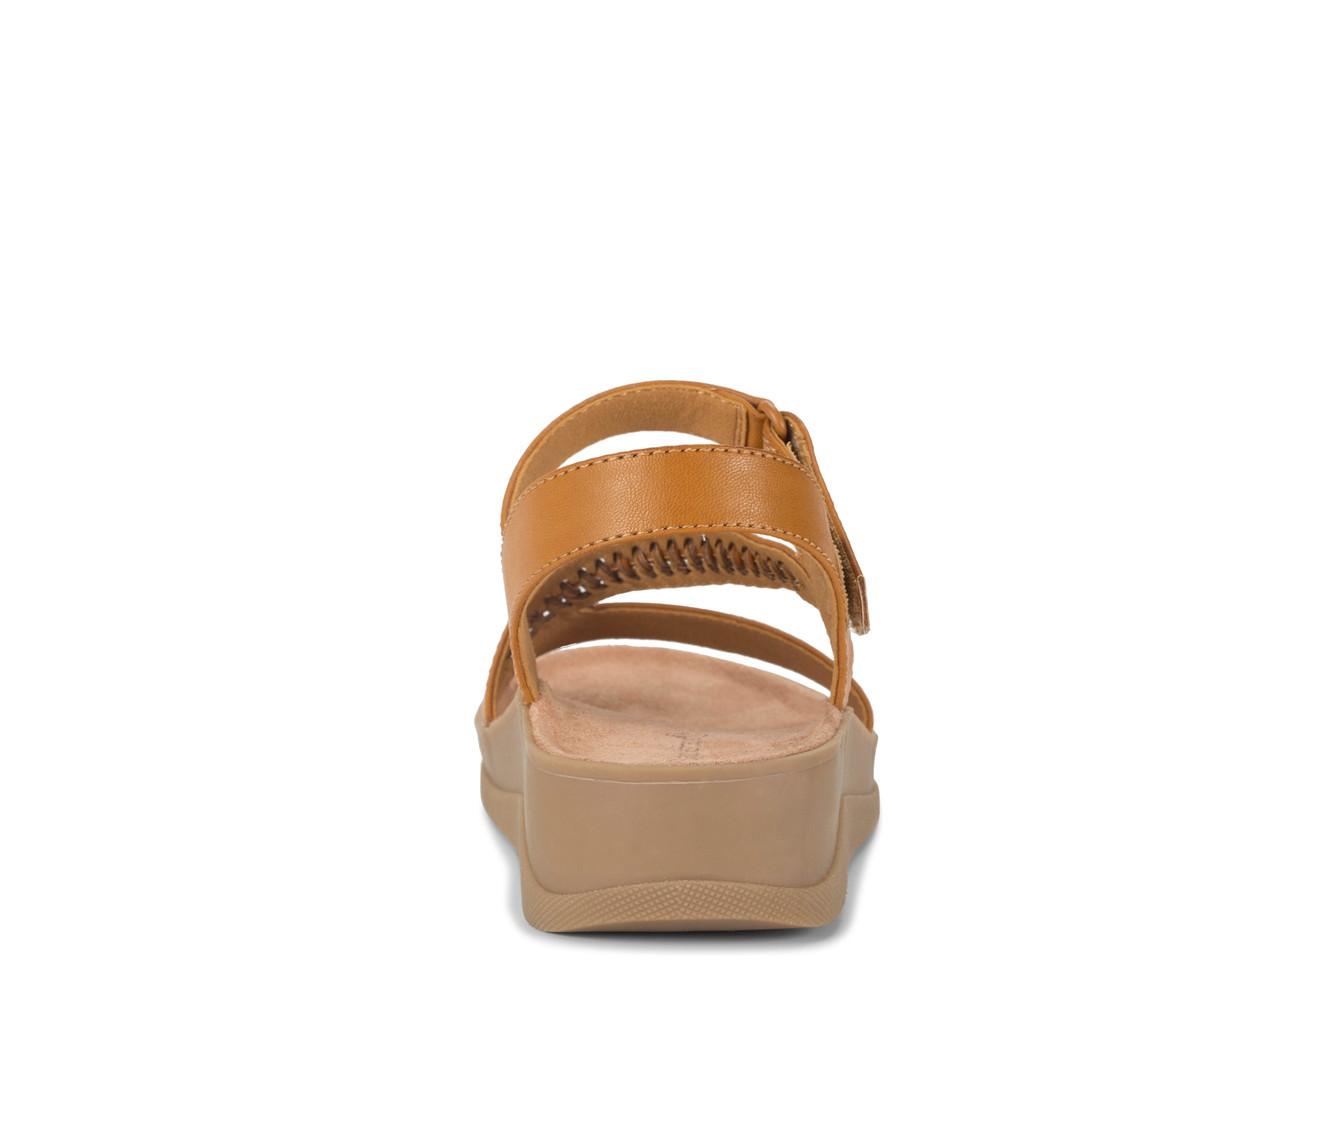 Women's Baretraps Frolick Wedge Sandals